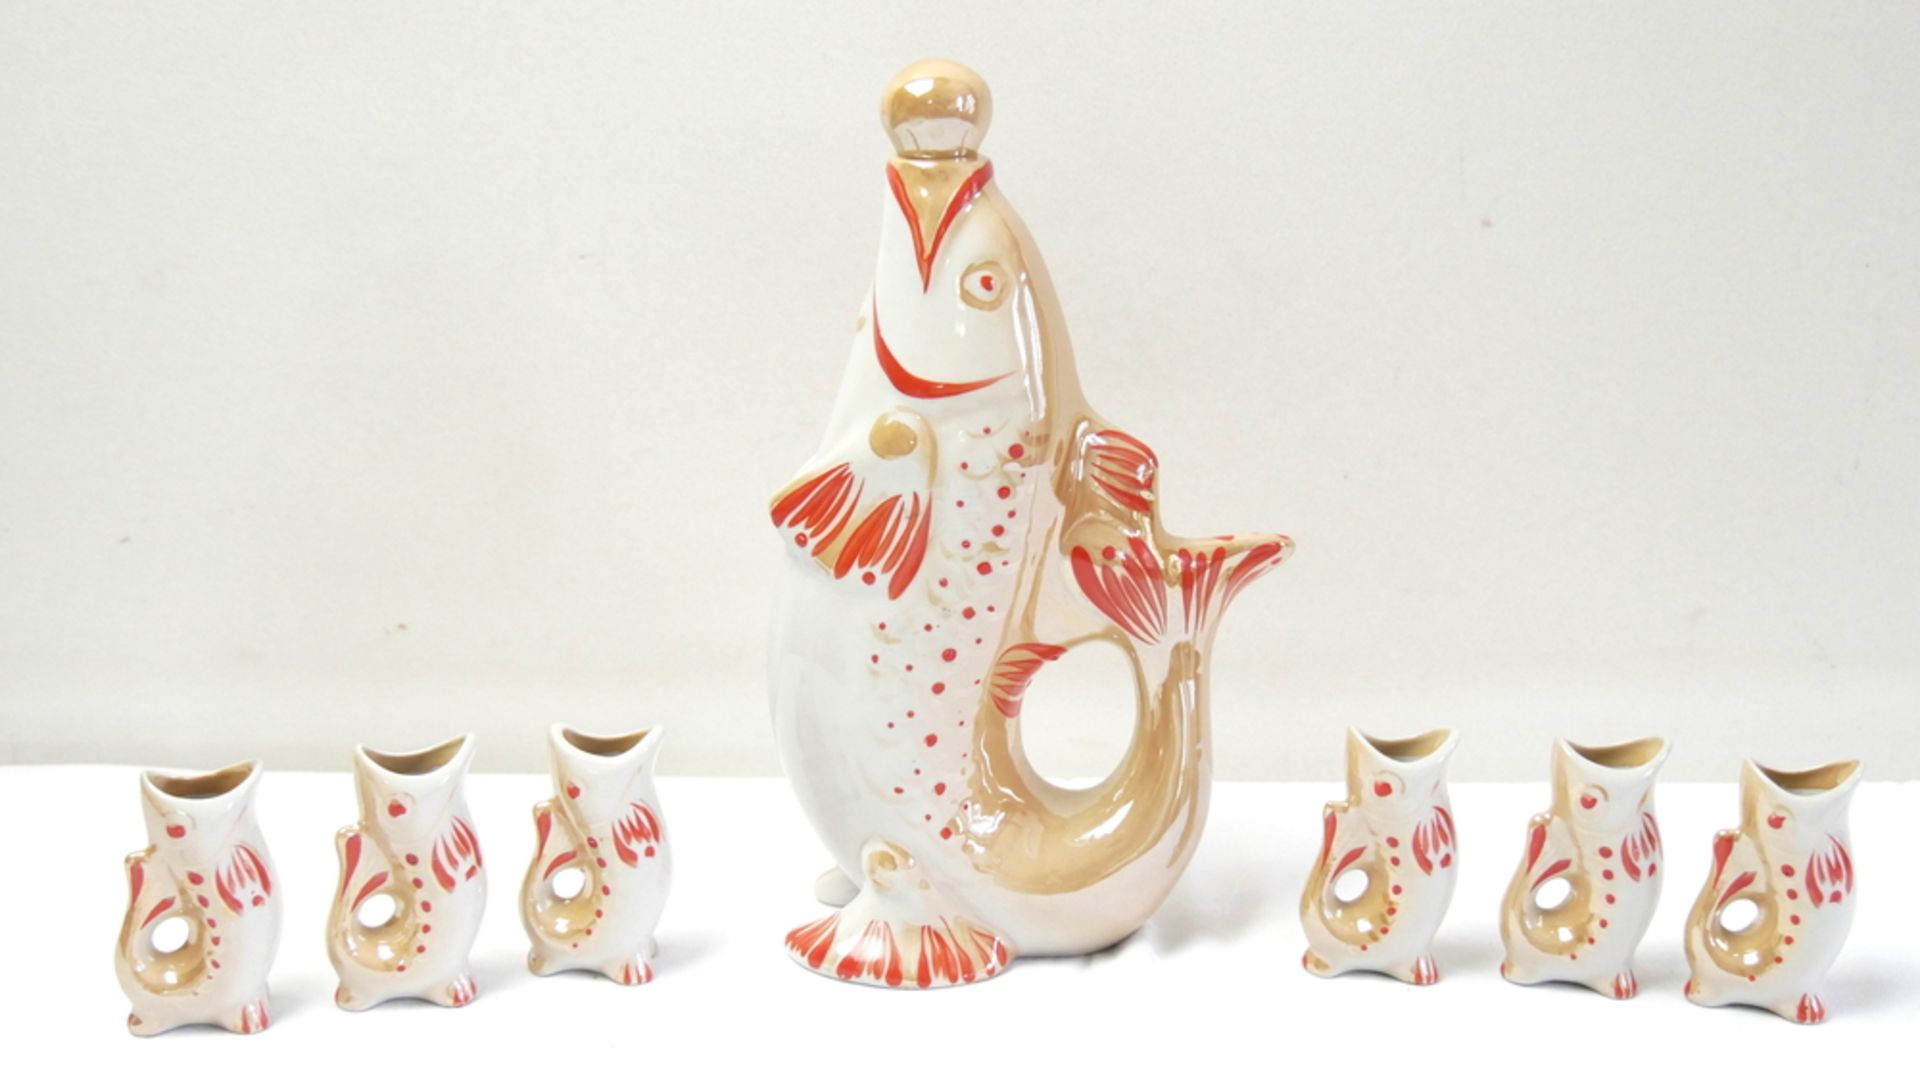 ausgefallenes Keramik Schnaps - Set "Fisch", bestehend aus 1 Schnapsflasche uns 6 Becher. Farbig